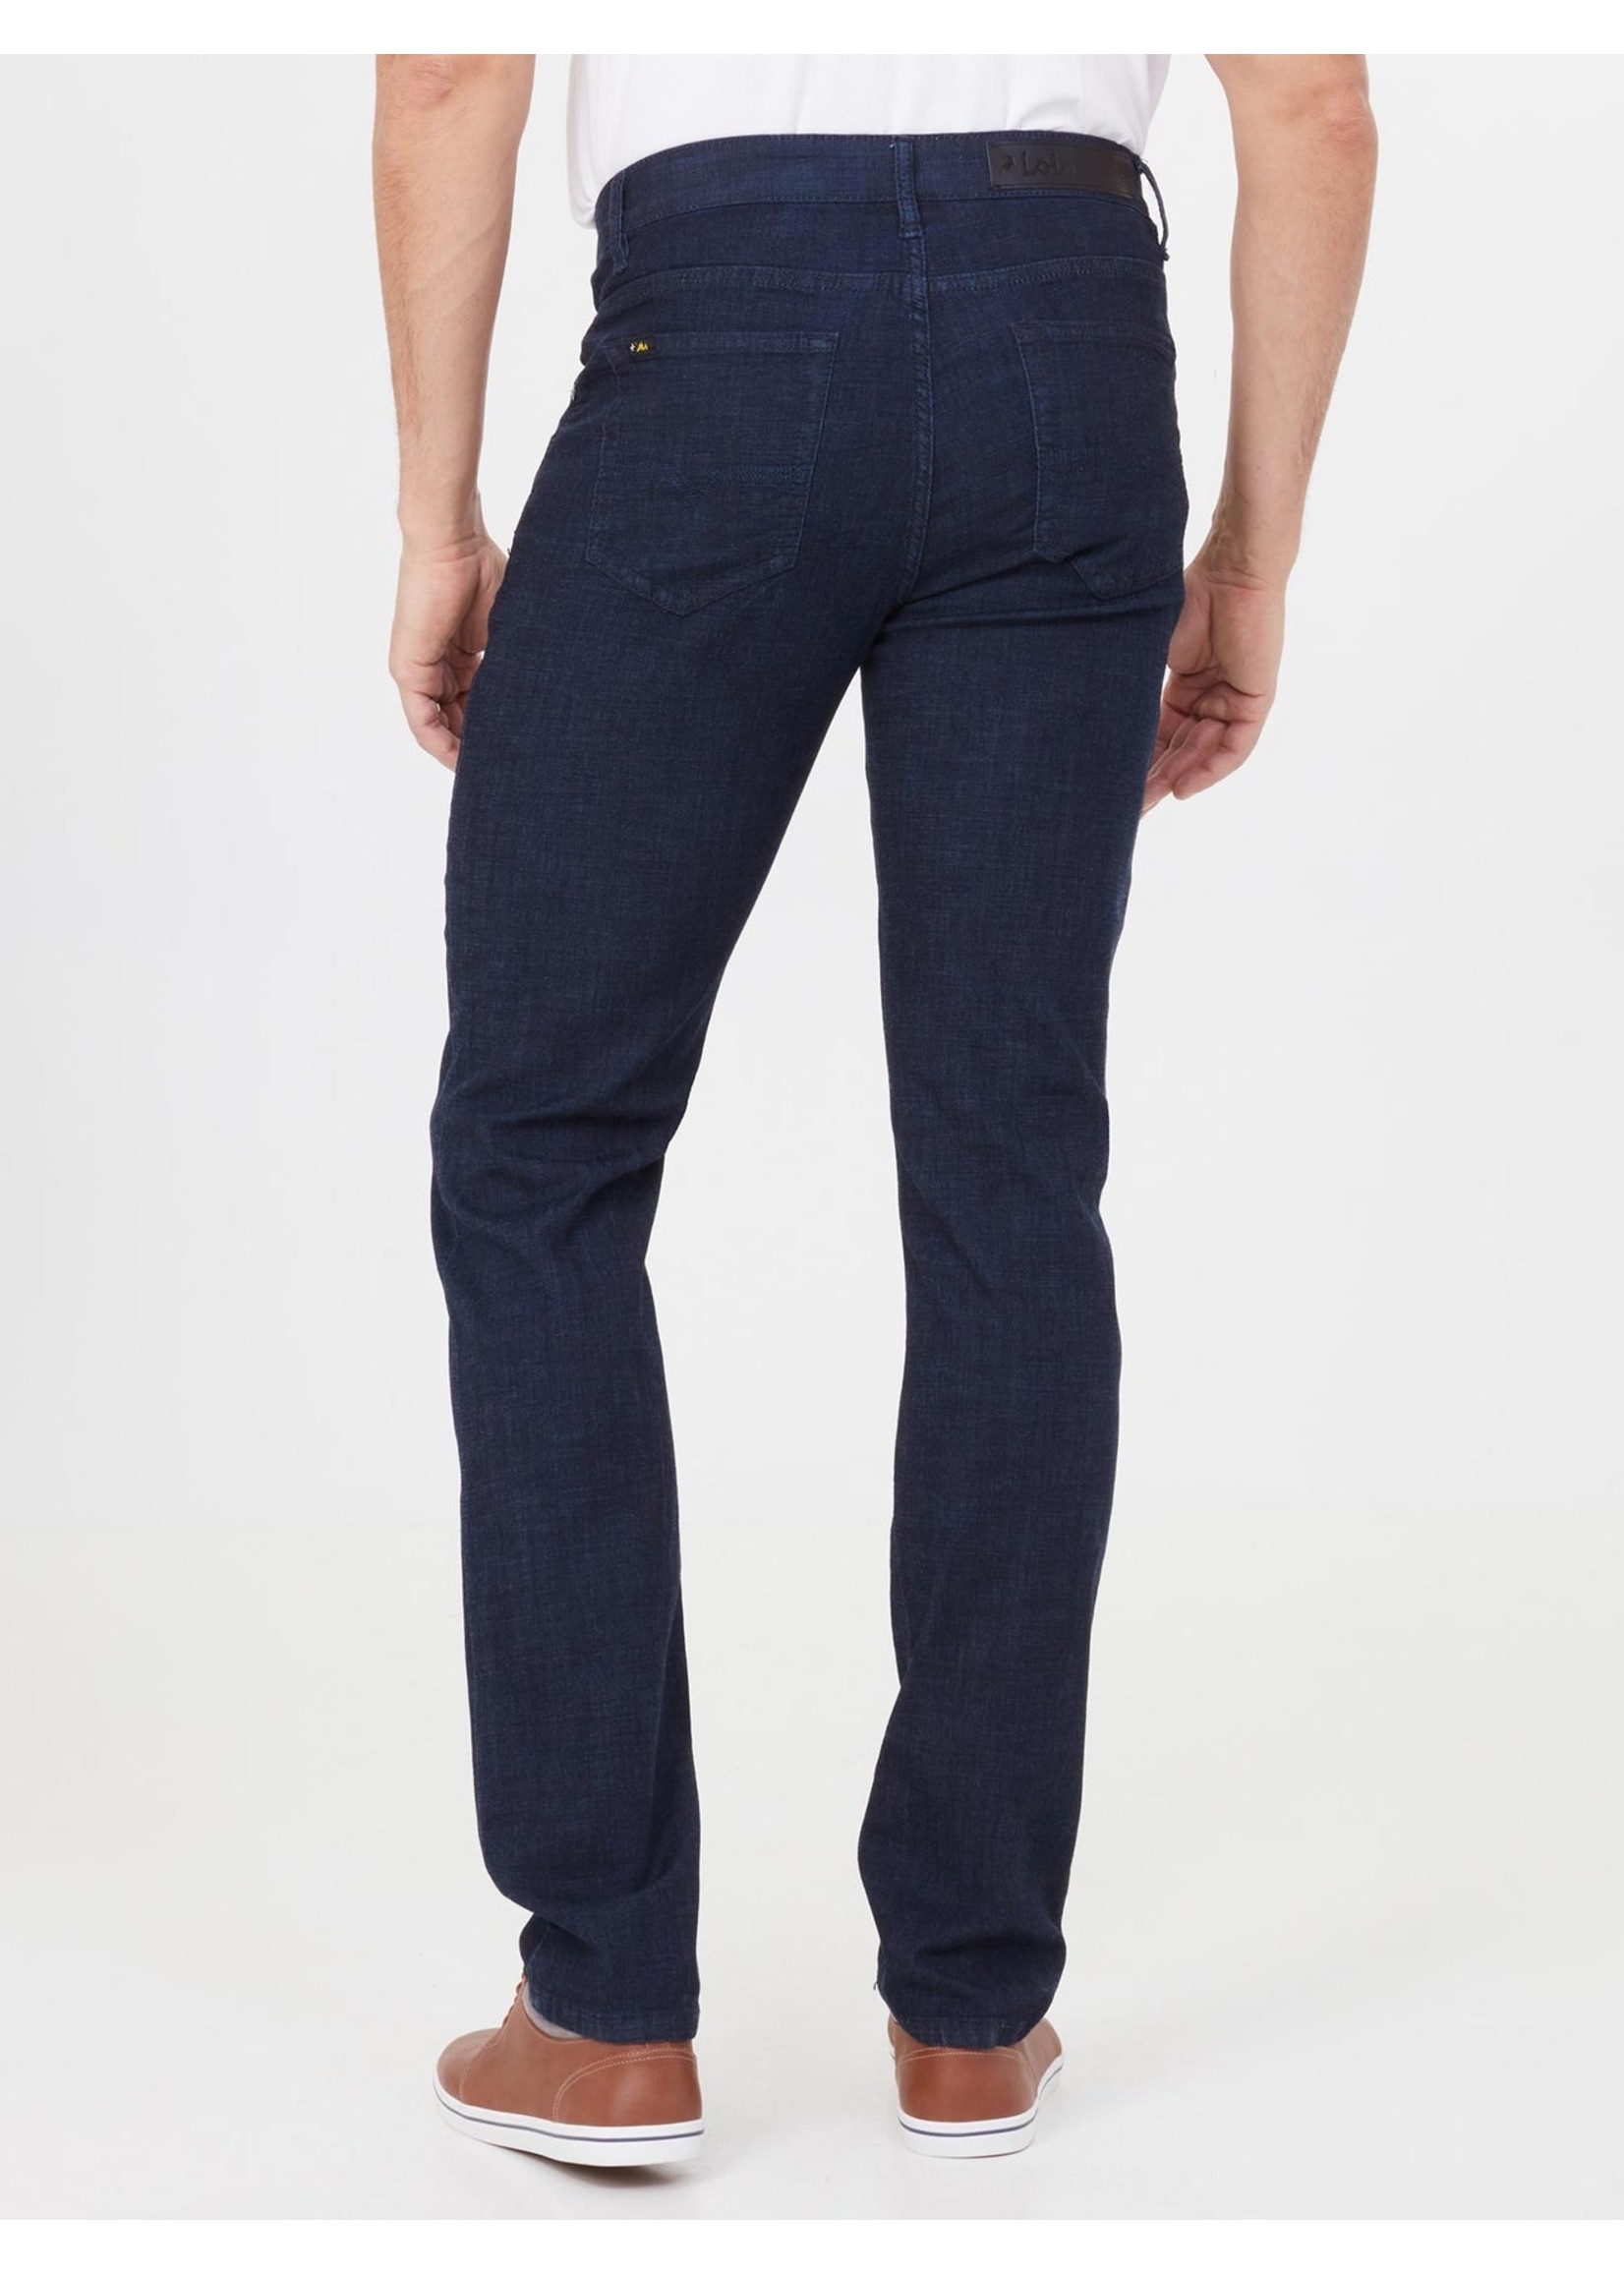 LOIS JEANS & JACKETS Jeans ultra léger texturé coupe Peter slim-Homme